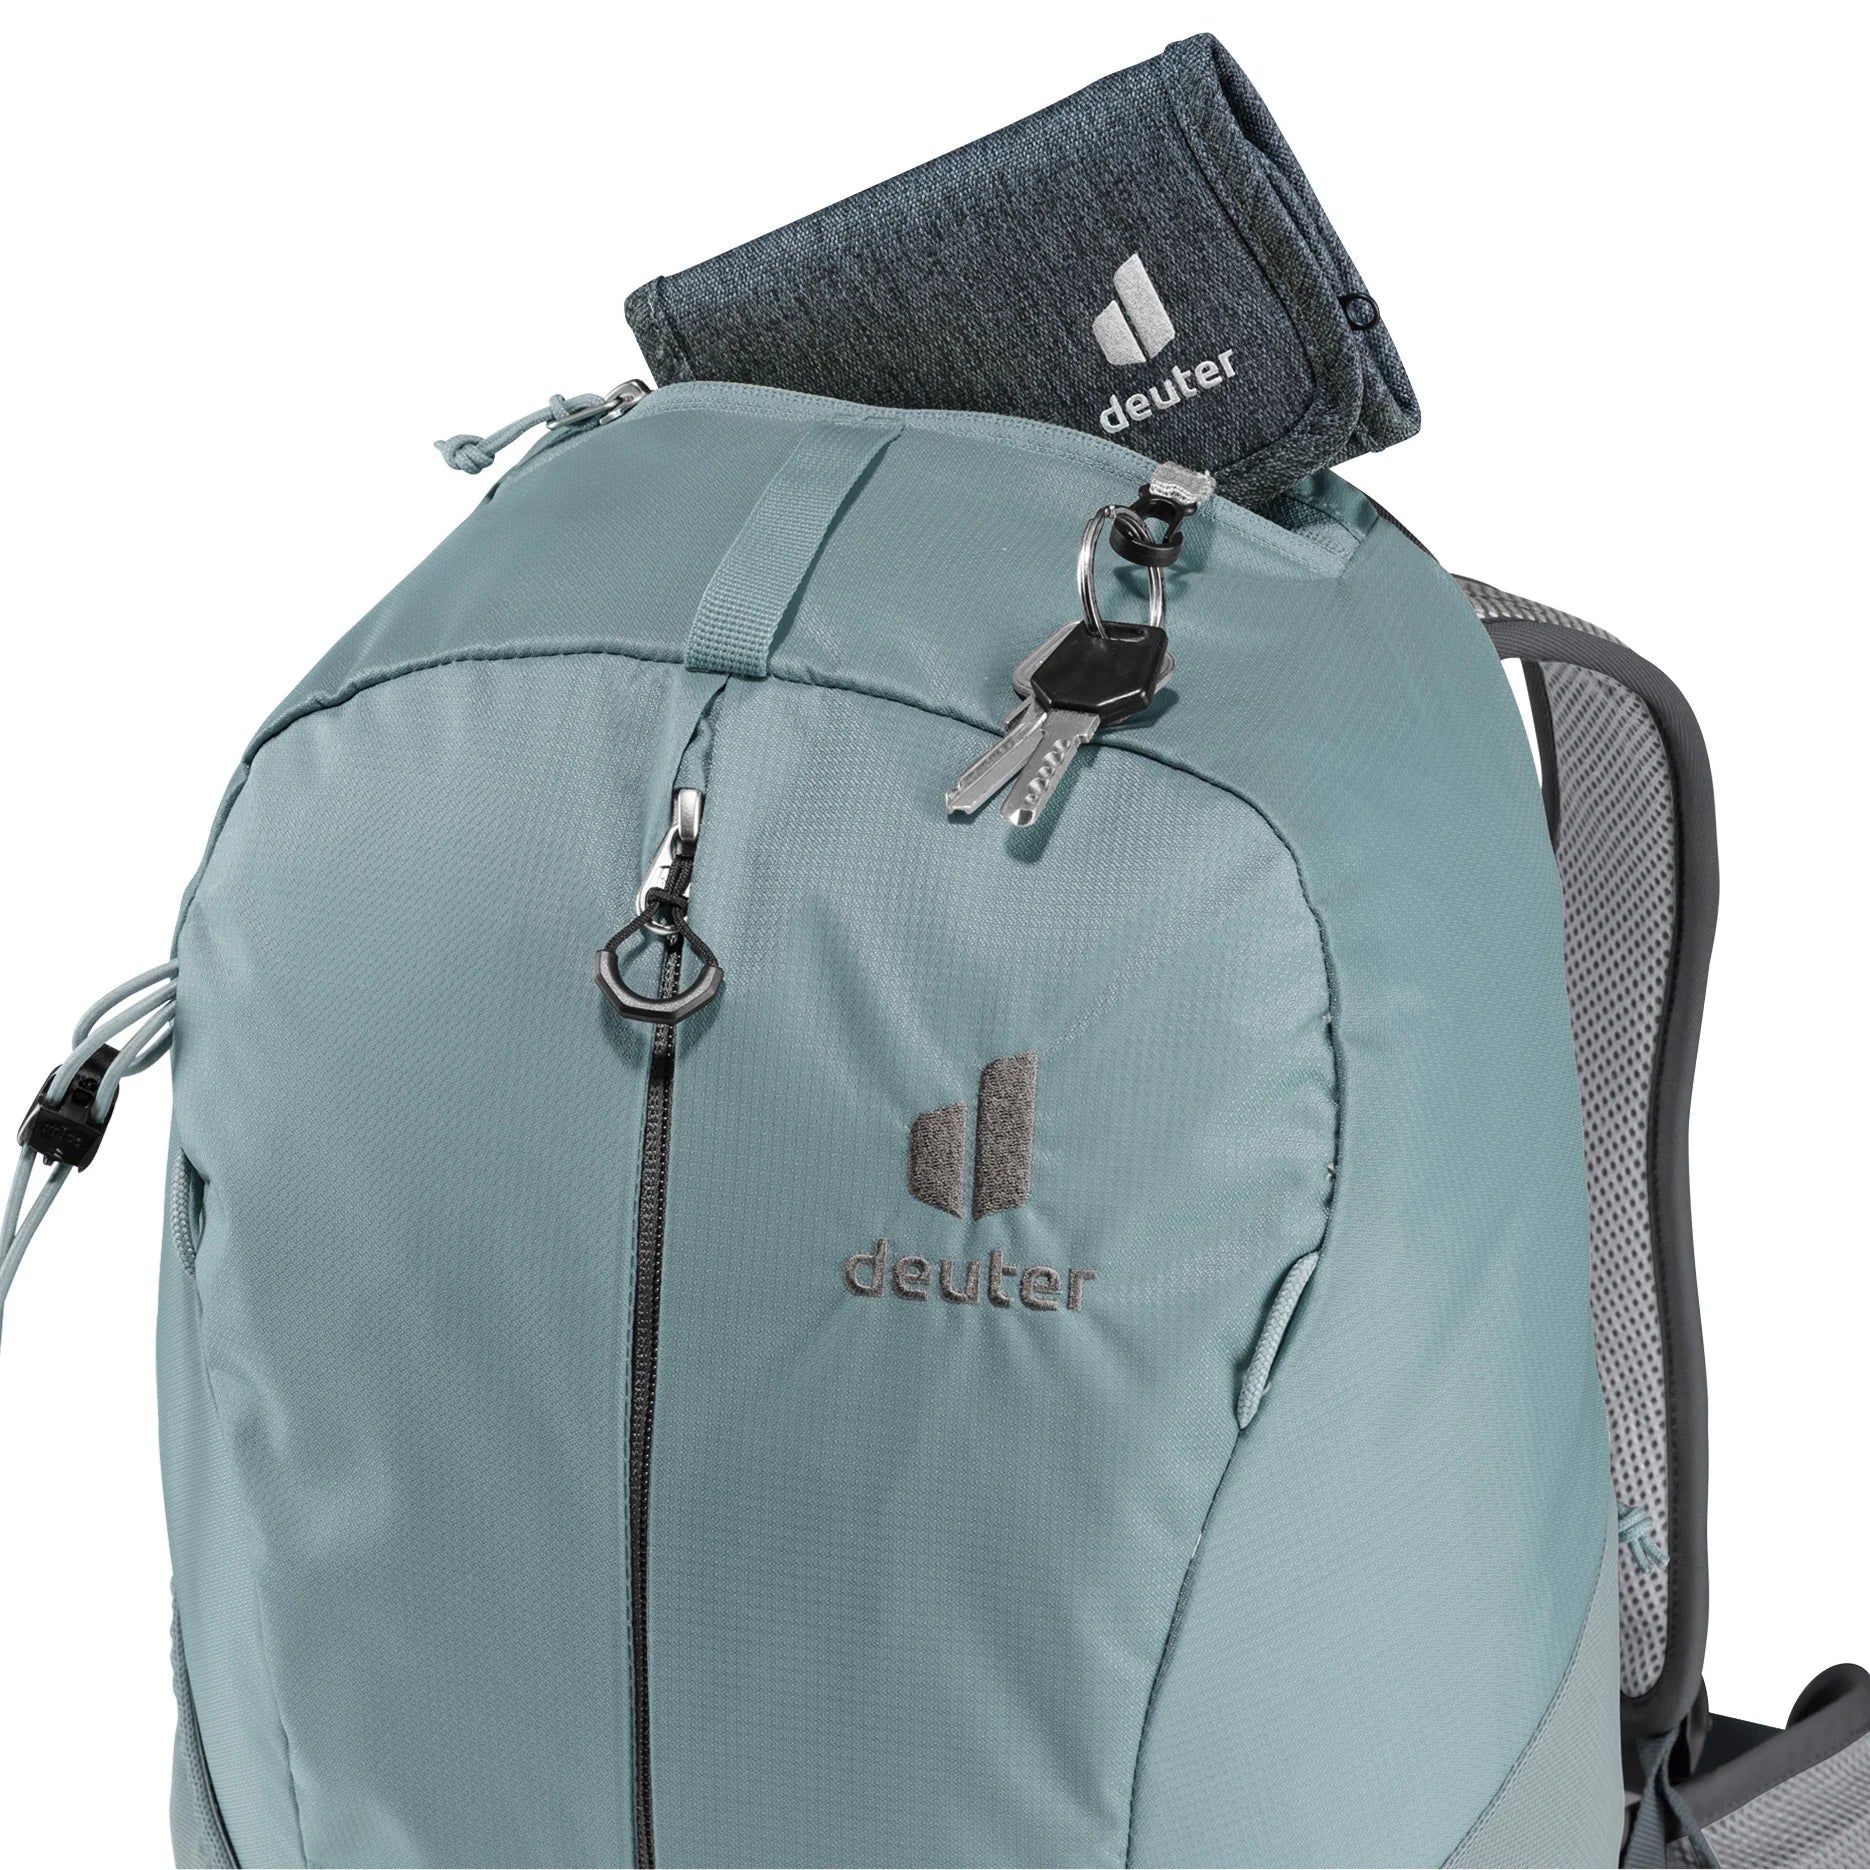 Deuter Travel AC Lite 23 sac à dos de randonnée 52 cm - vertcurry-sarcelle